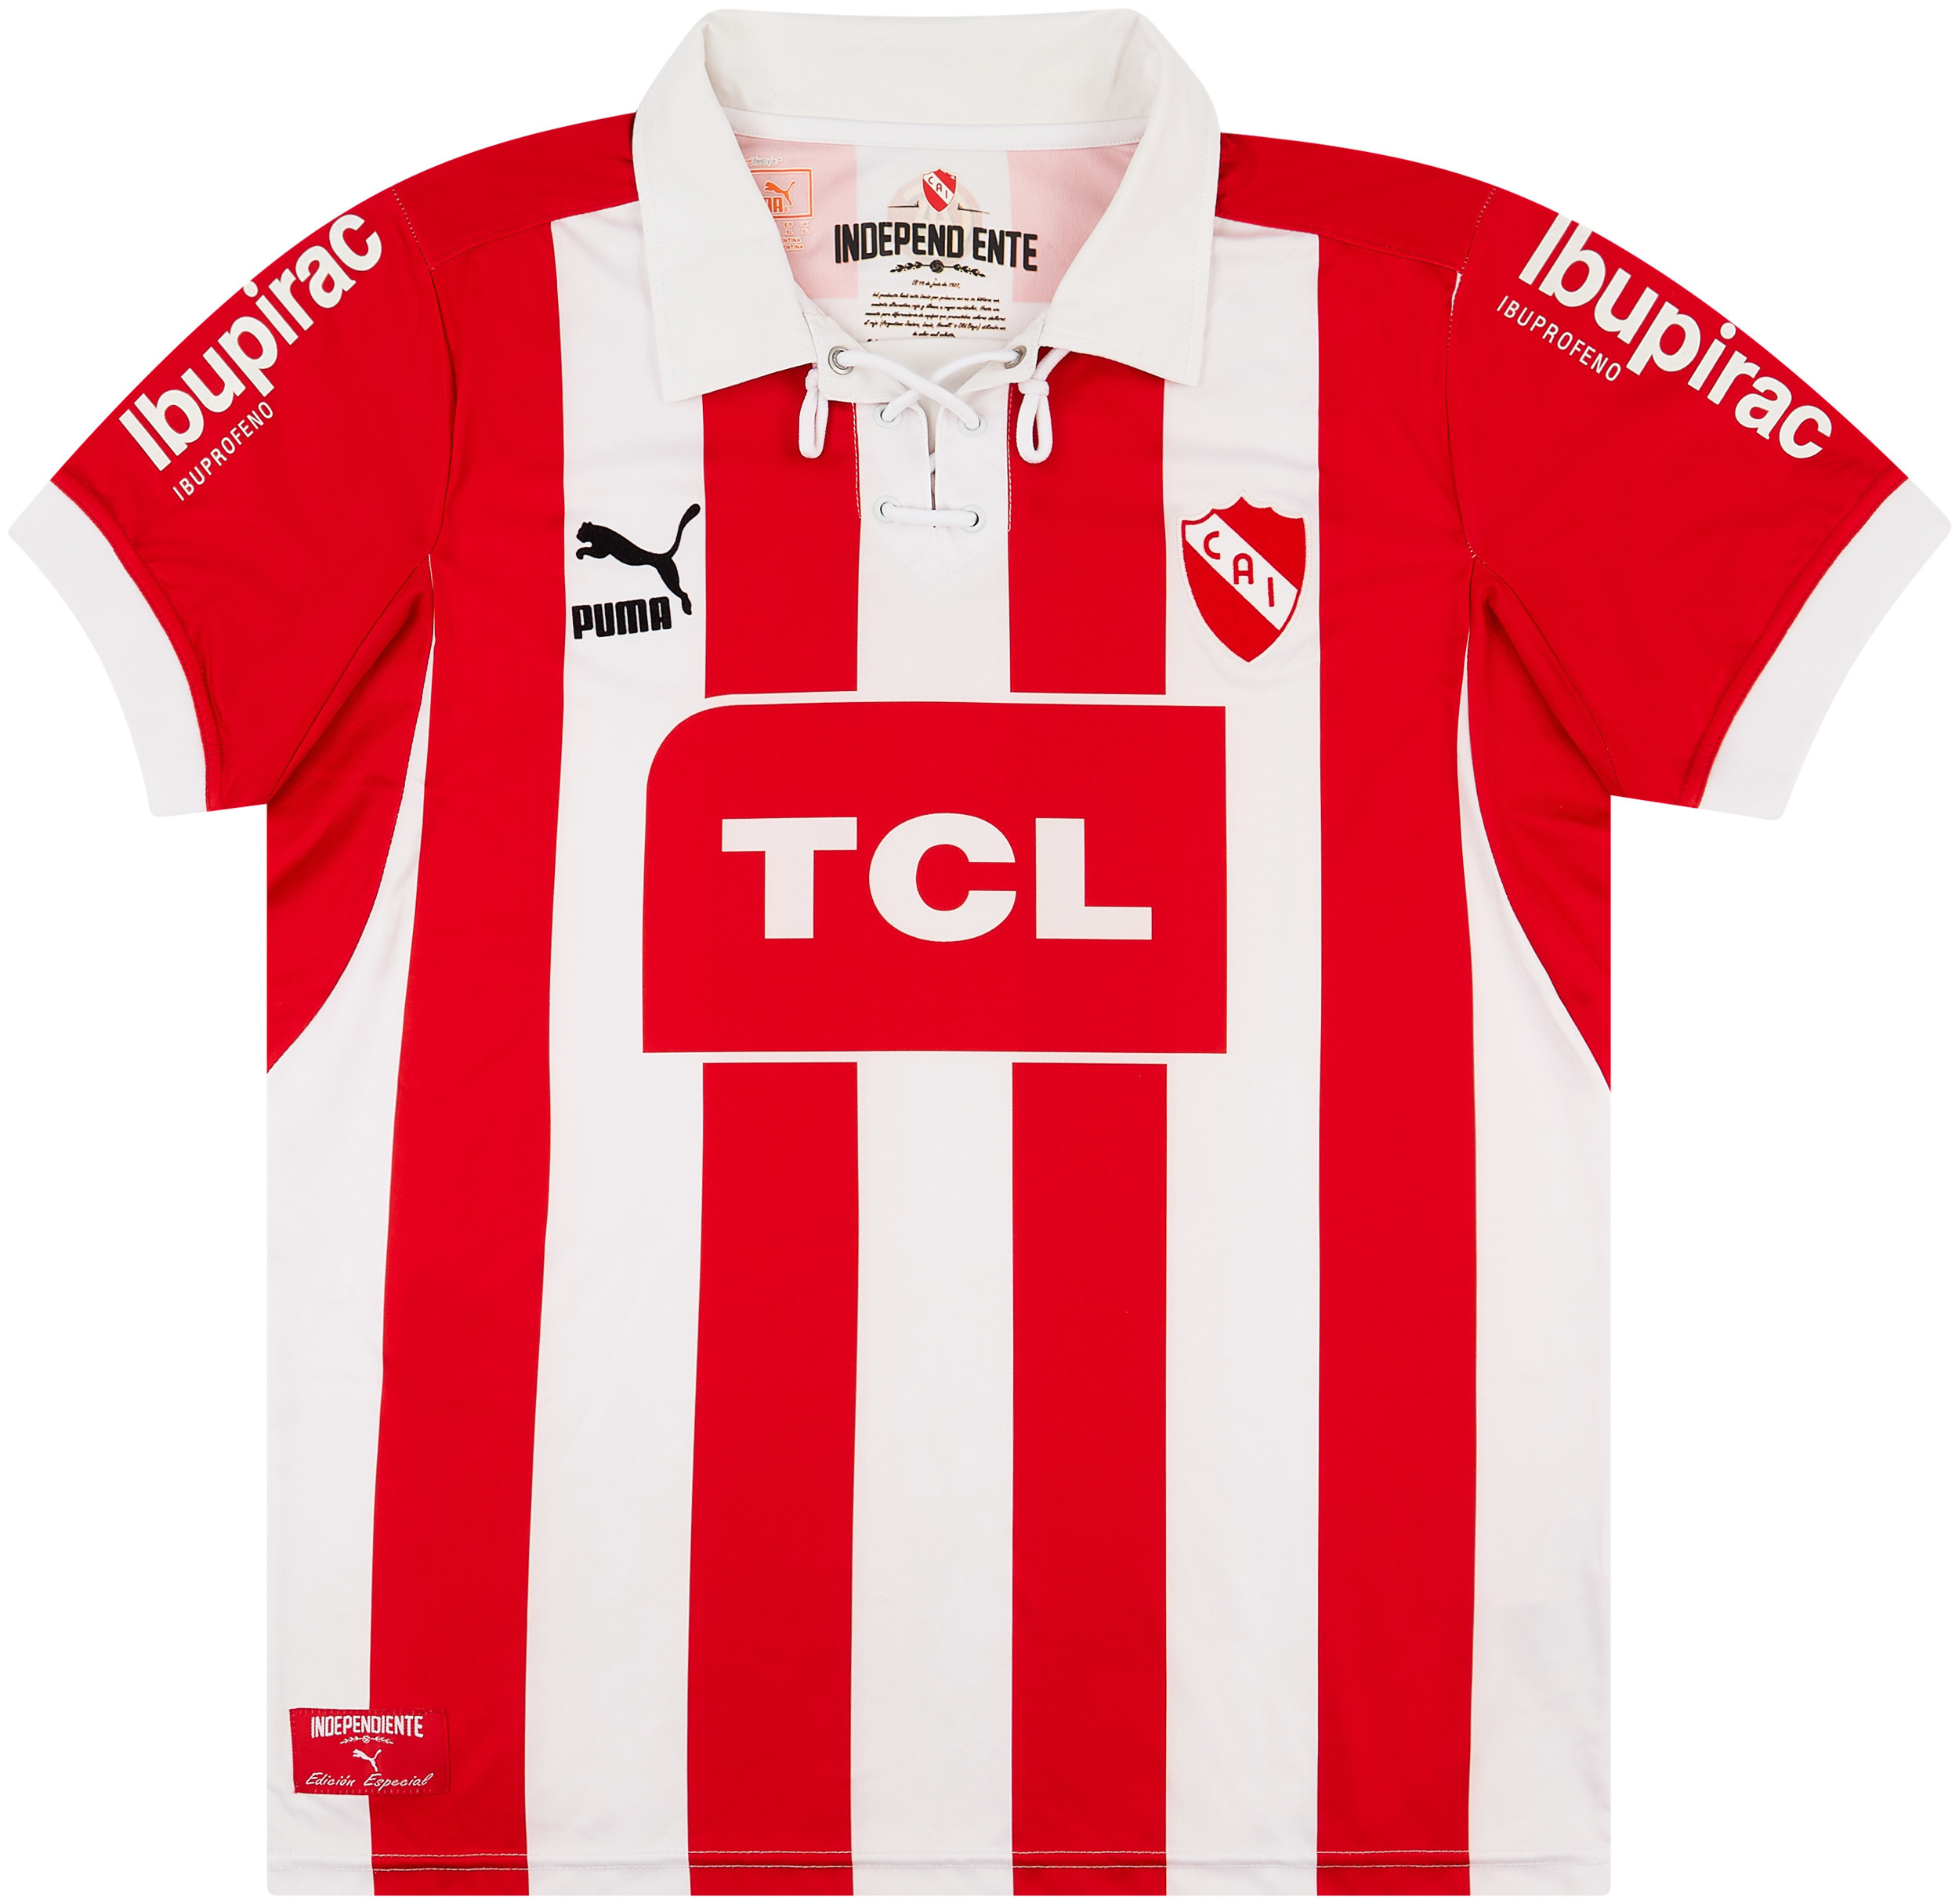 2013 Independiente 'Retro' Home Shirt - 7/10 - ()